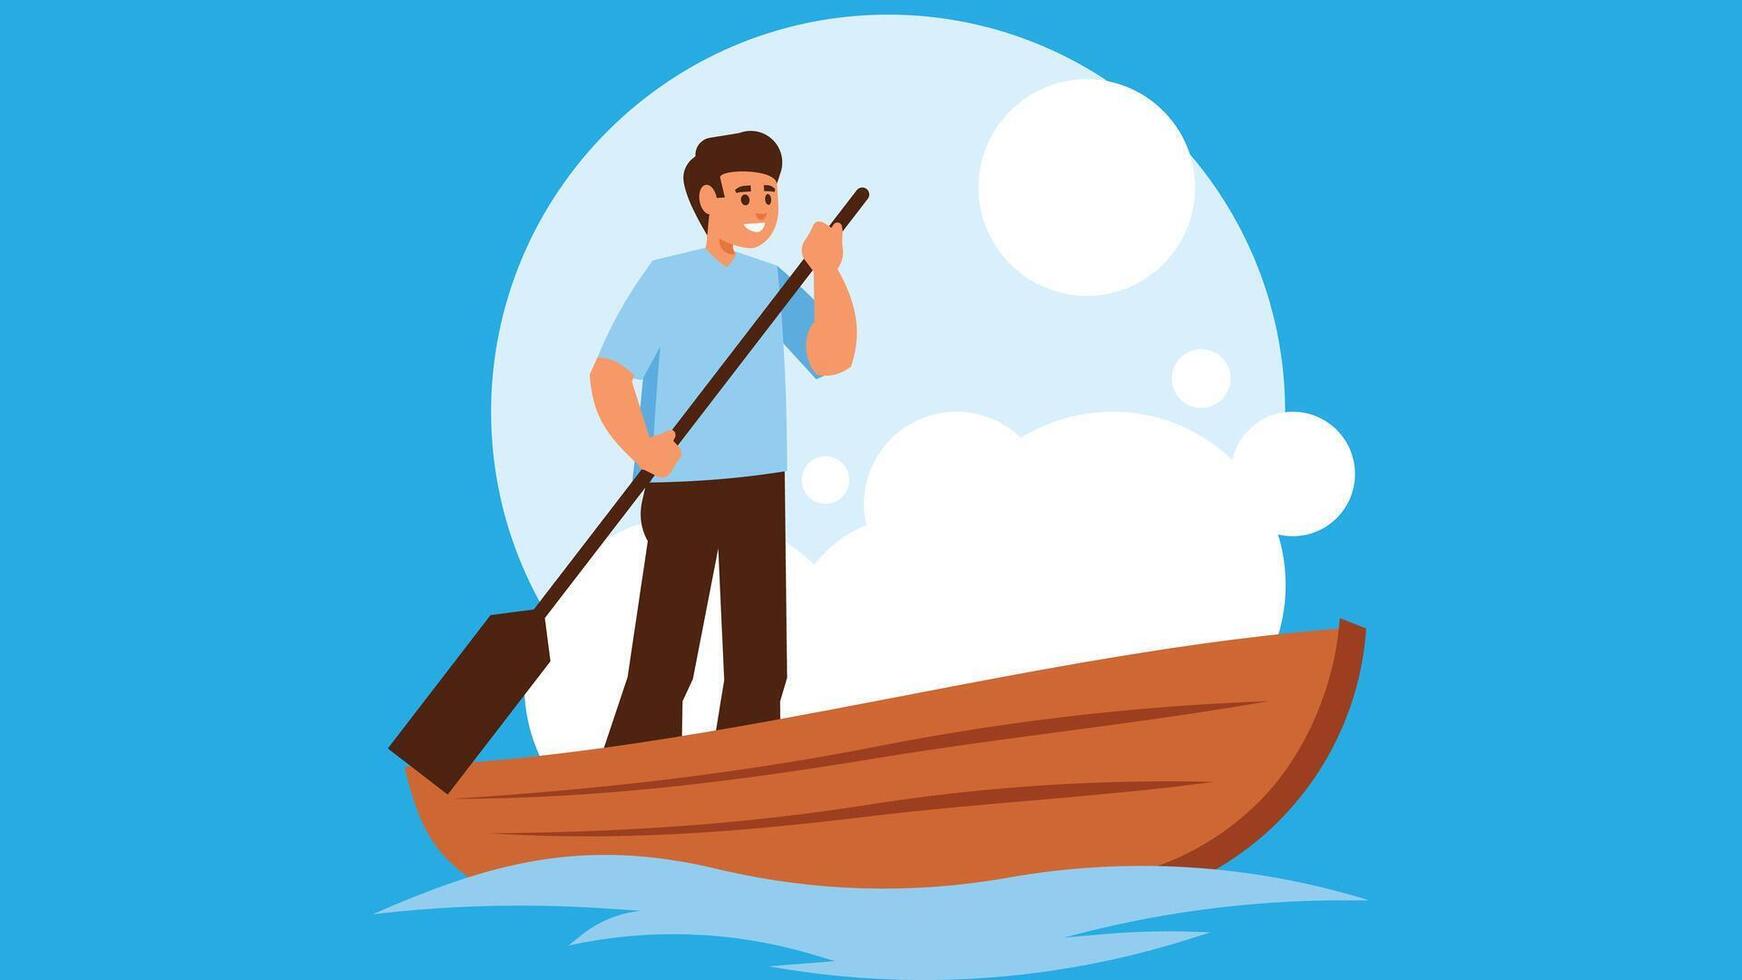 persoon raften in een boot in de meer illustratie vector